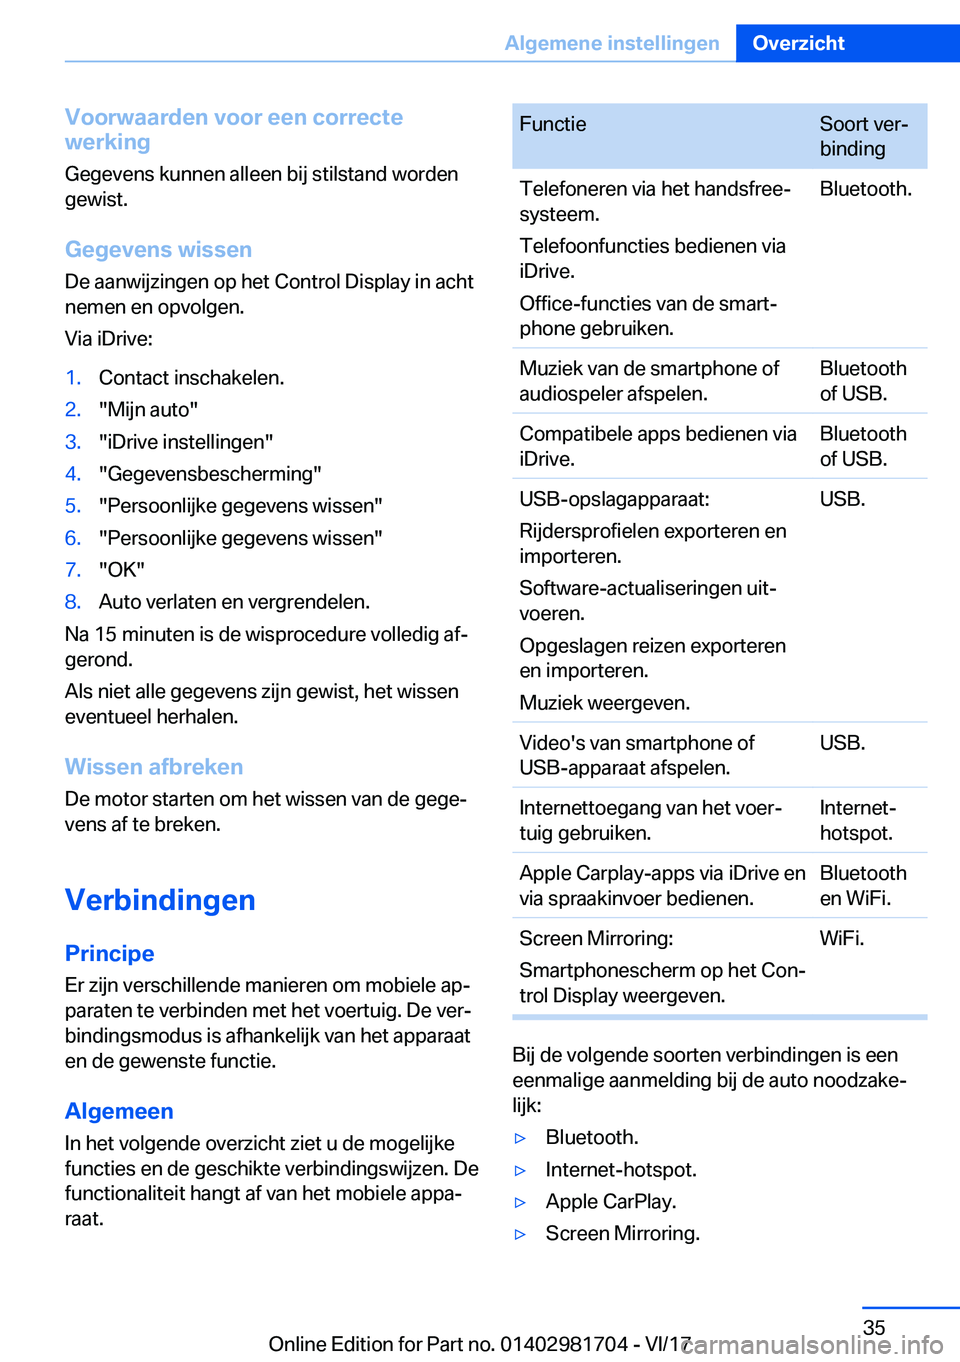 BMW M4 2018  Instructieboekjes (in Dutch) �V�o�o�r�w�a�a�r�d�e�n��v�o�o�r��e�e�n��c�o�r�r�e�c�t�e
�w�e�r�k�i�n�g
�G�e�g�e�v�e�n�s� �k�u�n�n�e�n� �a�l�l�e�e�n� �b�i�j� �s�t�i�l�s�t�a�n�d� �w�o�r�d�e�n�g�e�w�i�s�t�.
�G�e�g�e�v�e�n�s��w�i�s�